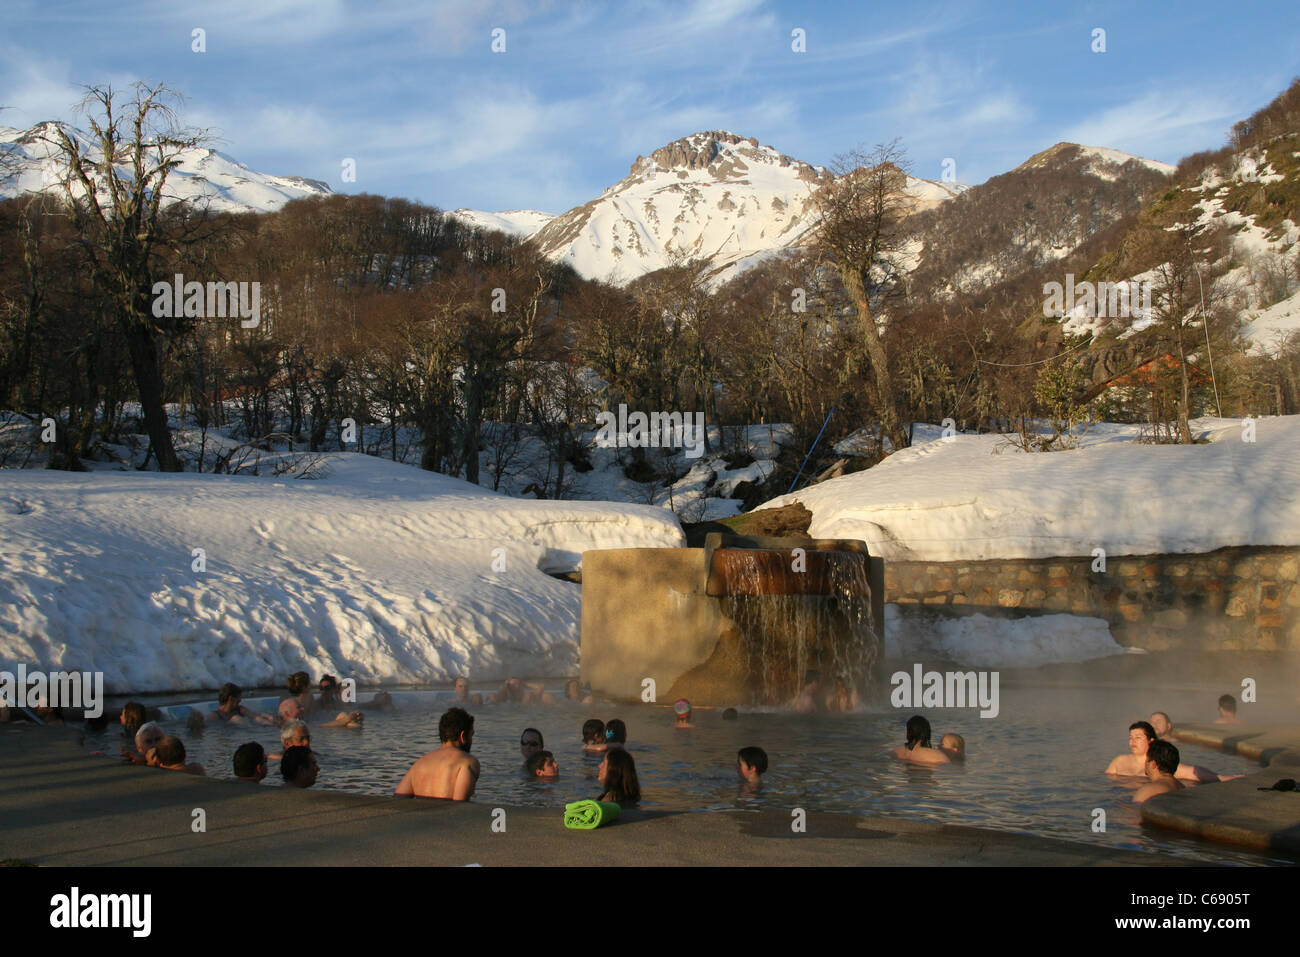 Las personas bañarse en las aguas termales de Termas de Chillán ski resort.  Temas de Chillán Chillán, Bío-Bío, Chile, Sudamérica Fotografía de stock -  Alamy